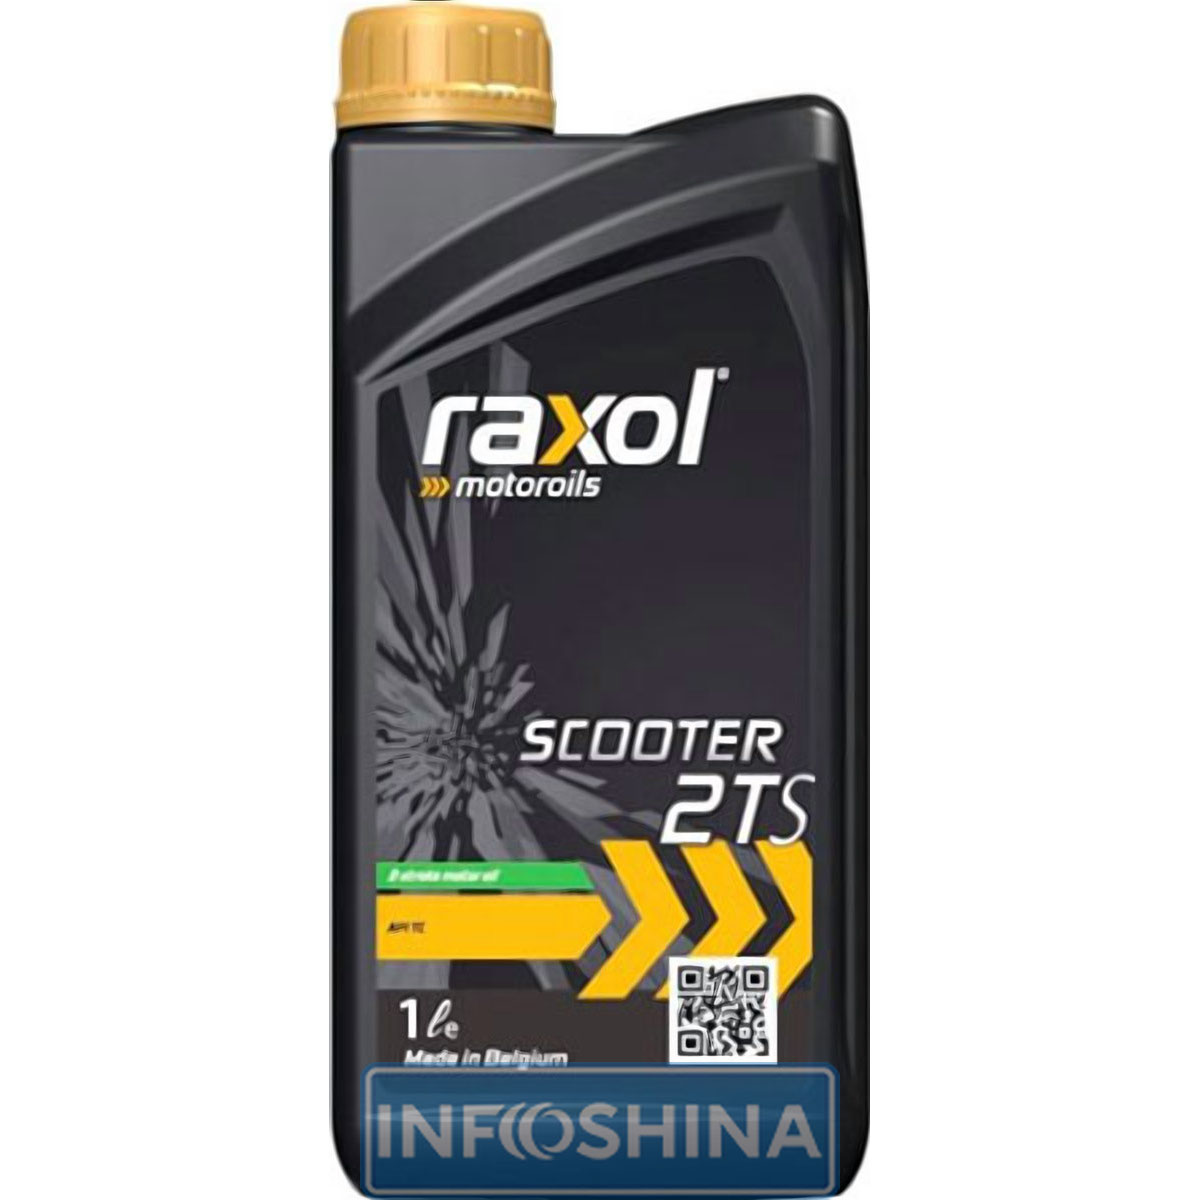 Raxol Scooter 2TS